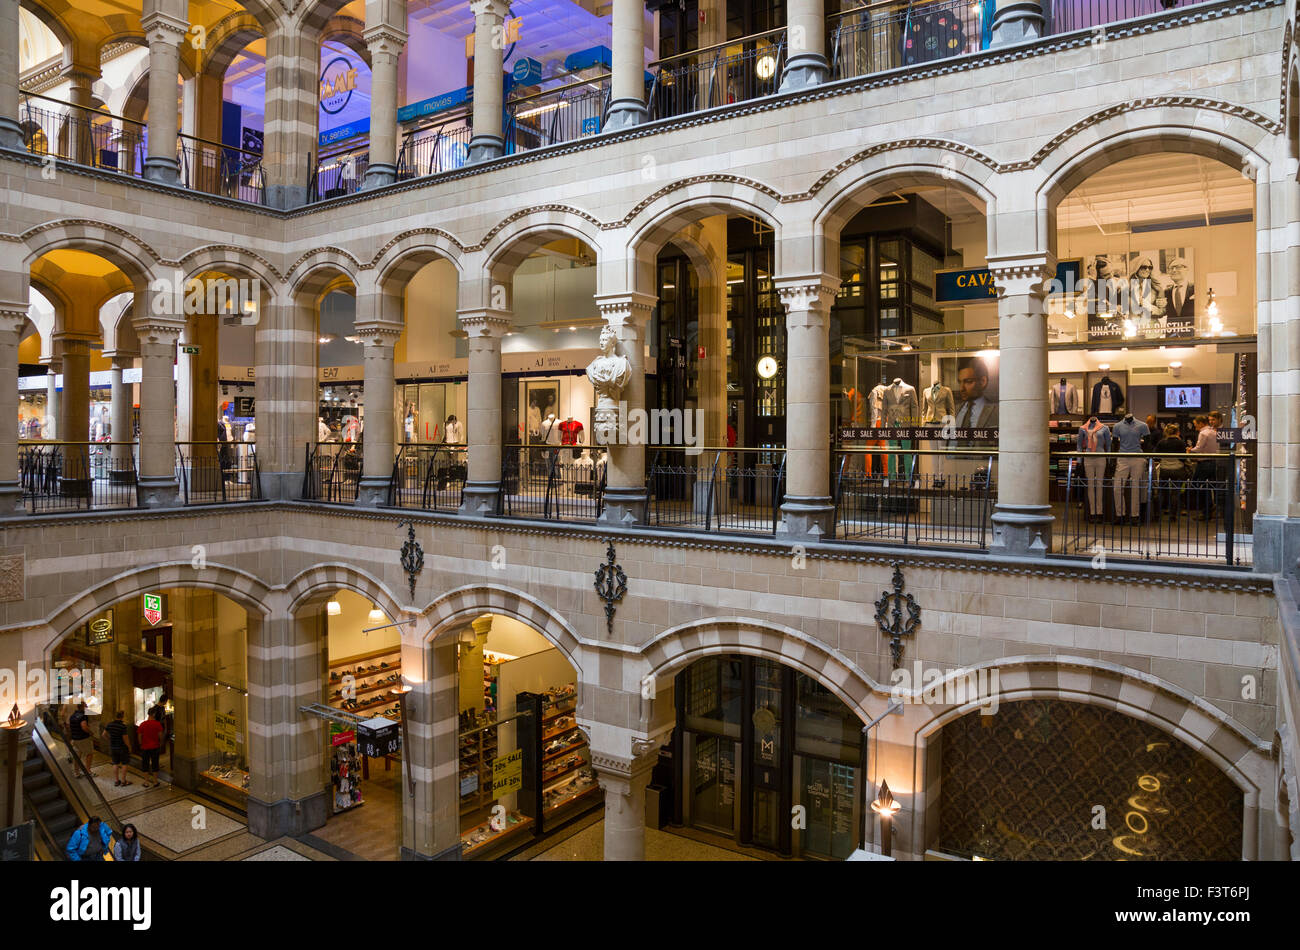 Intérieur de la Magna Plaza Shopping Mall à Amsterdam, Pays-Bas Photo Stock  - Alamy